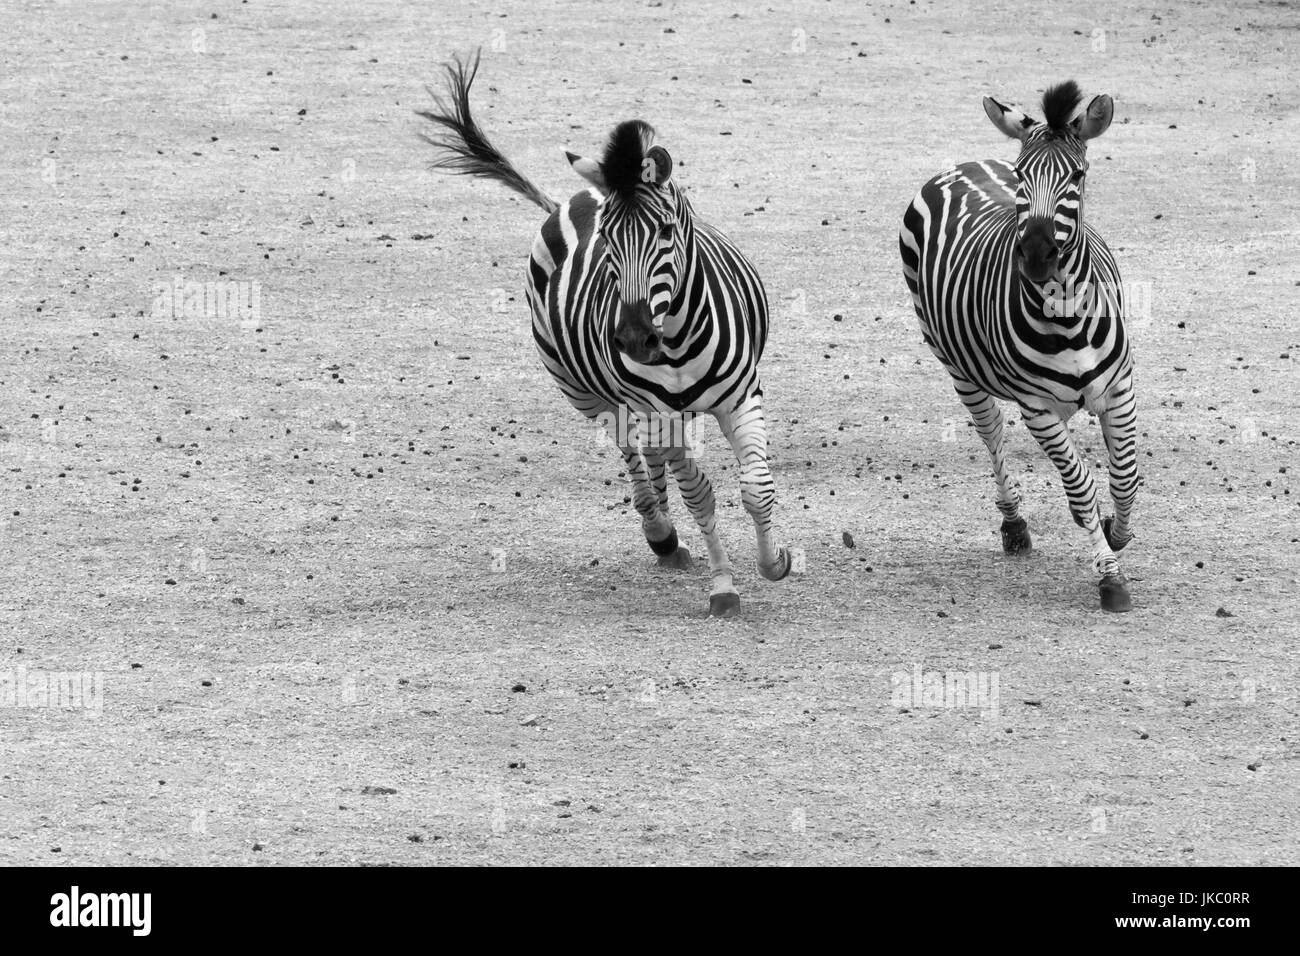 Les zèbres galopant en noir et blanc. Paire de zèbre des plaines (Equus quagga) fonctionnant côte à côte Banque D'Images